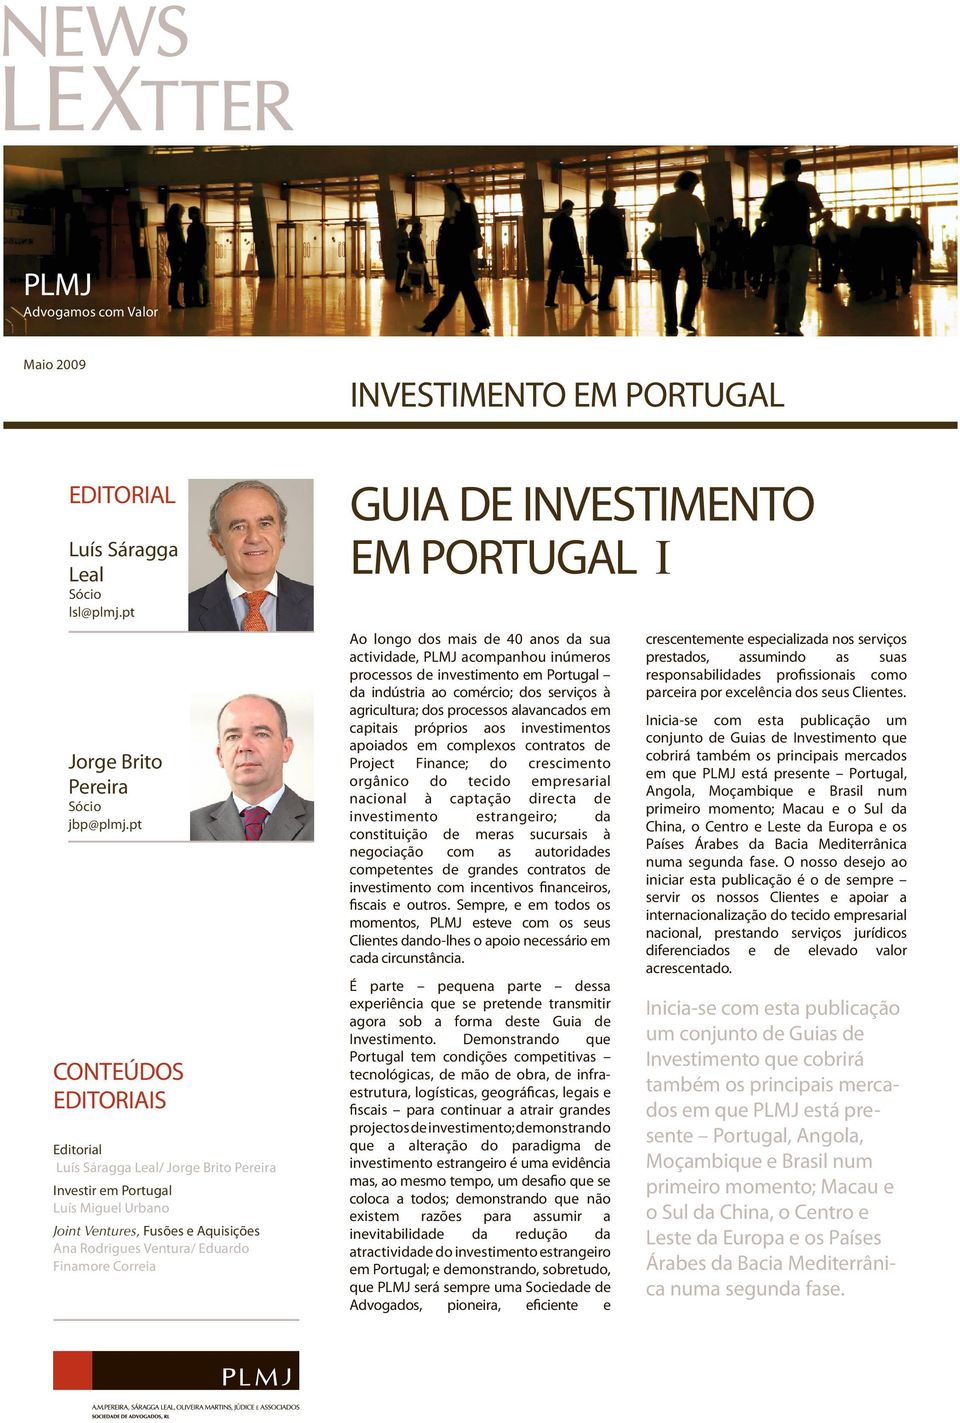 GUIA DE INVESTIMENTO EM PORTUGAL I Ao longo dos mais de 40 anos sua activide, PLMJ acompanhou inúmeros processos de investimento em Portugal indústria ao comércio; dos serviços à agricultura; dos